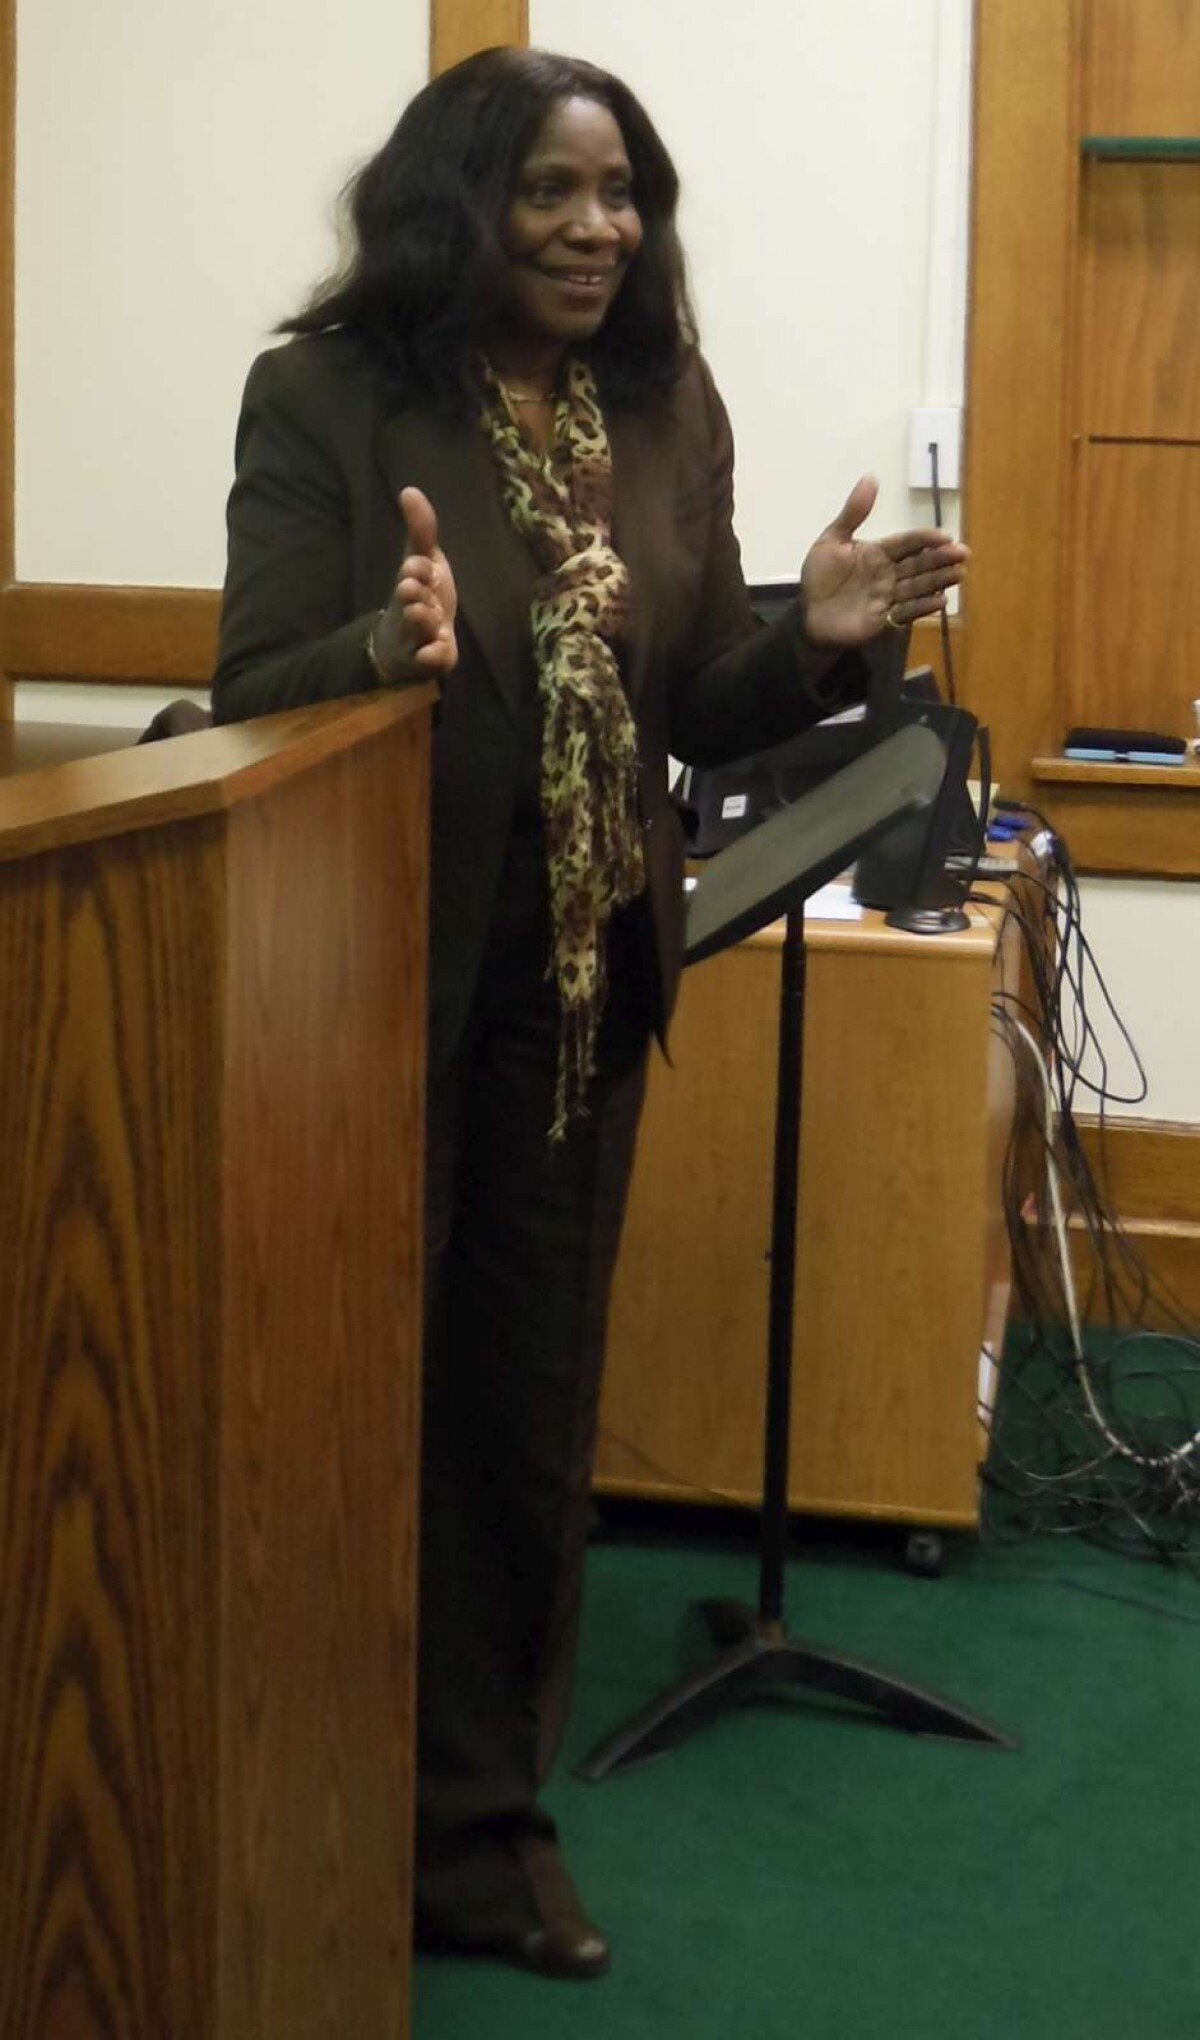 Rev. Juanita speaking